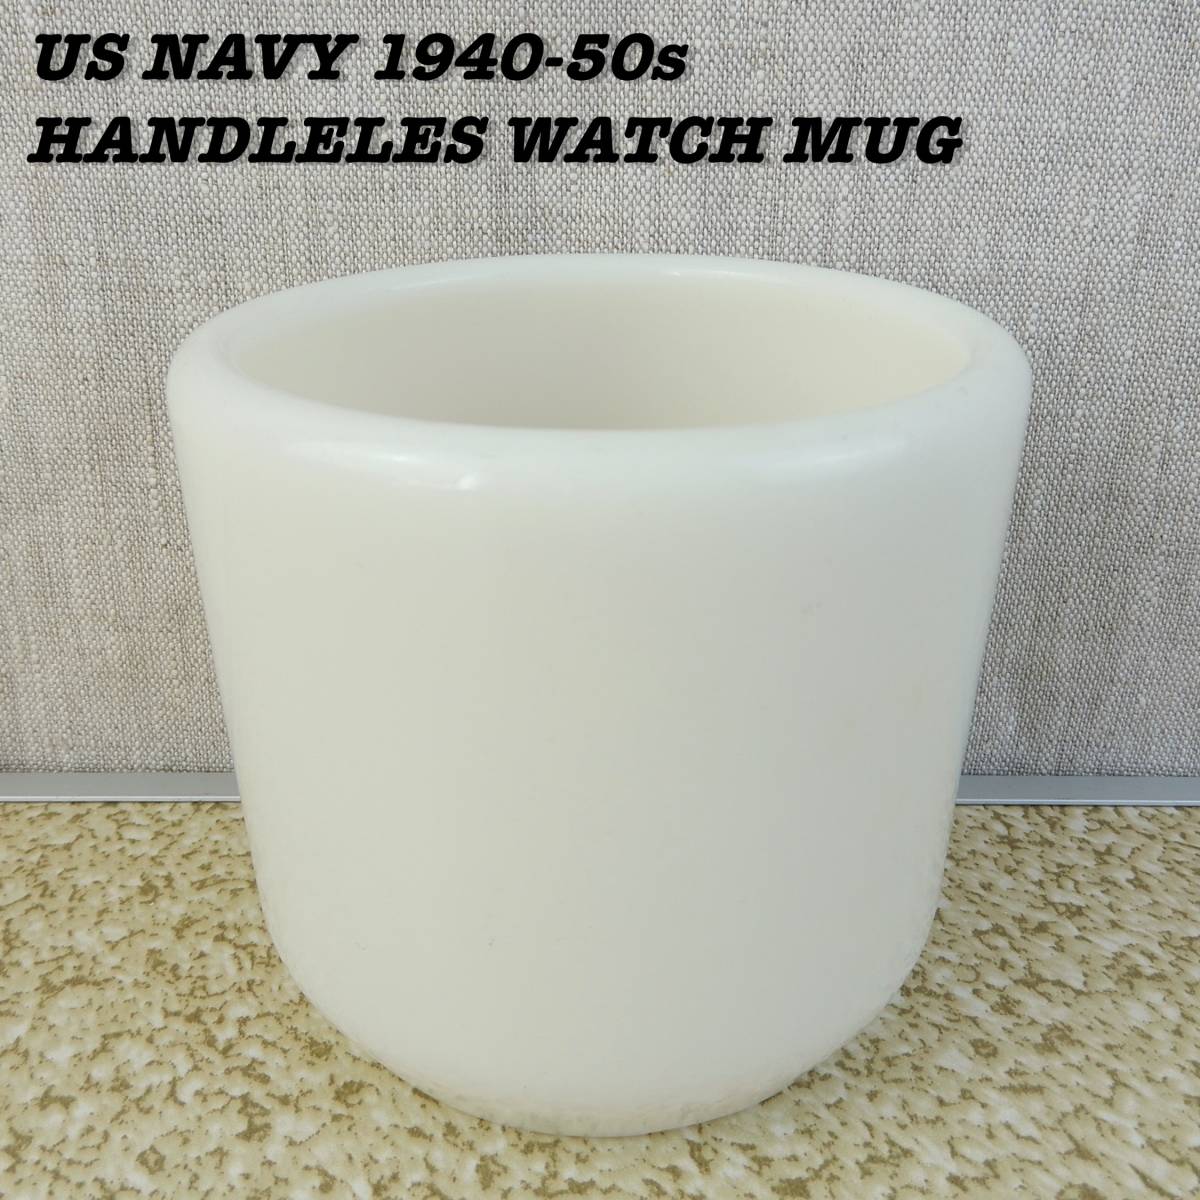 激安 1940s Cup Mug WATCH HANDLELESS CORNING NAVY US 1950s 大戦 1940年代 ハンドルレスマグカップ コーニング アメリカ海軍 Vintage ② その他